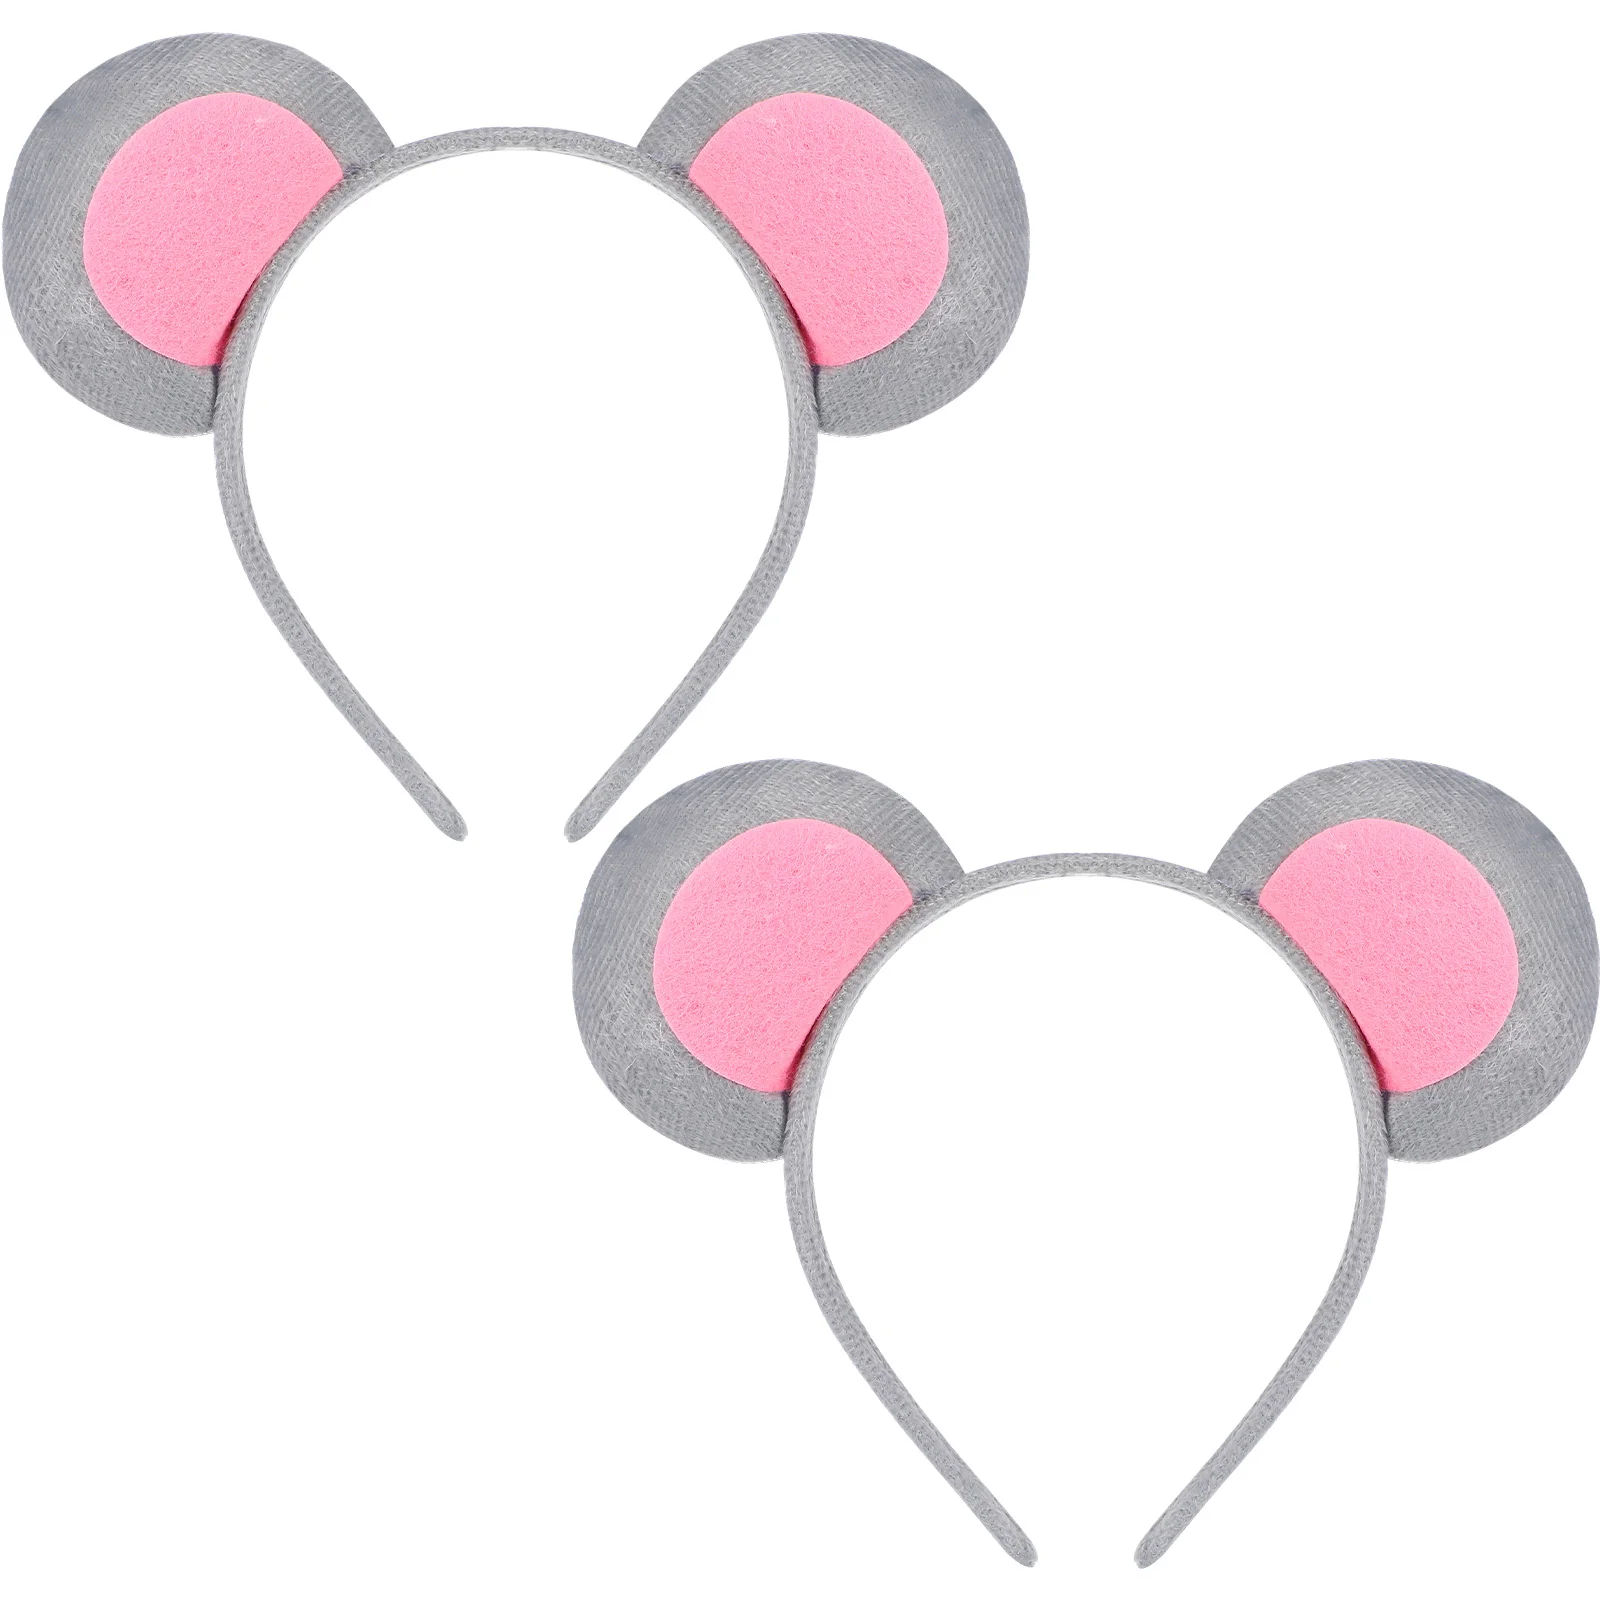 plush mouse ear headband 2pcs ear headbands mice costume ears headbands kitten headwear accessories for kids party favor Plush Mouse Ear Headband 2Pcs Ear Headbands Mice Costume Ears Headbands Kitten Headwear Accessories for Kids Party Favor (